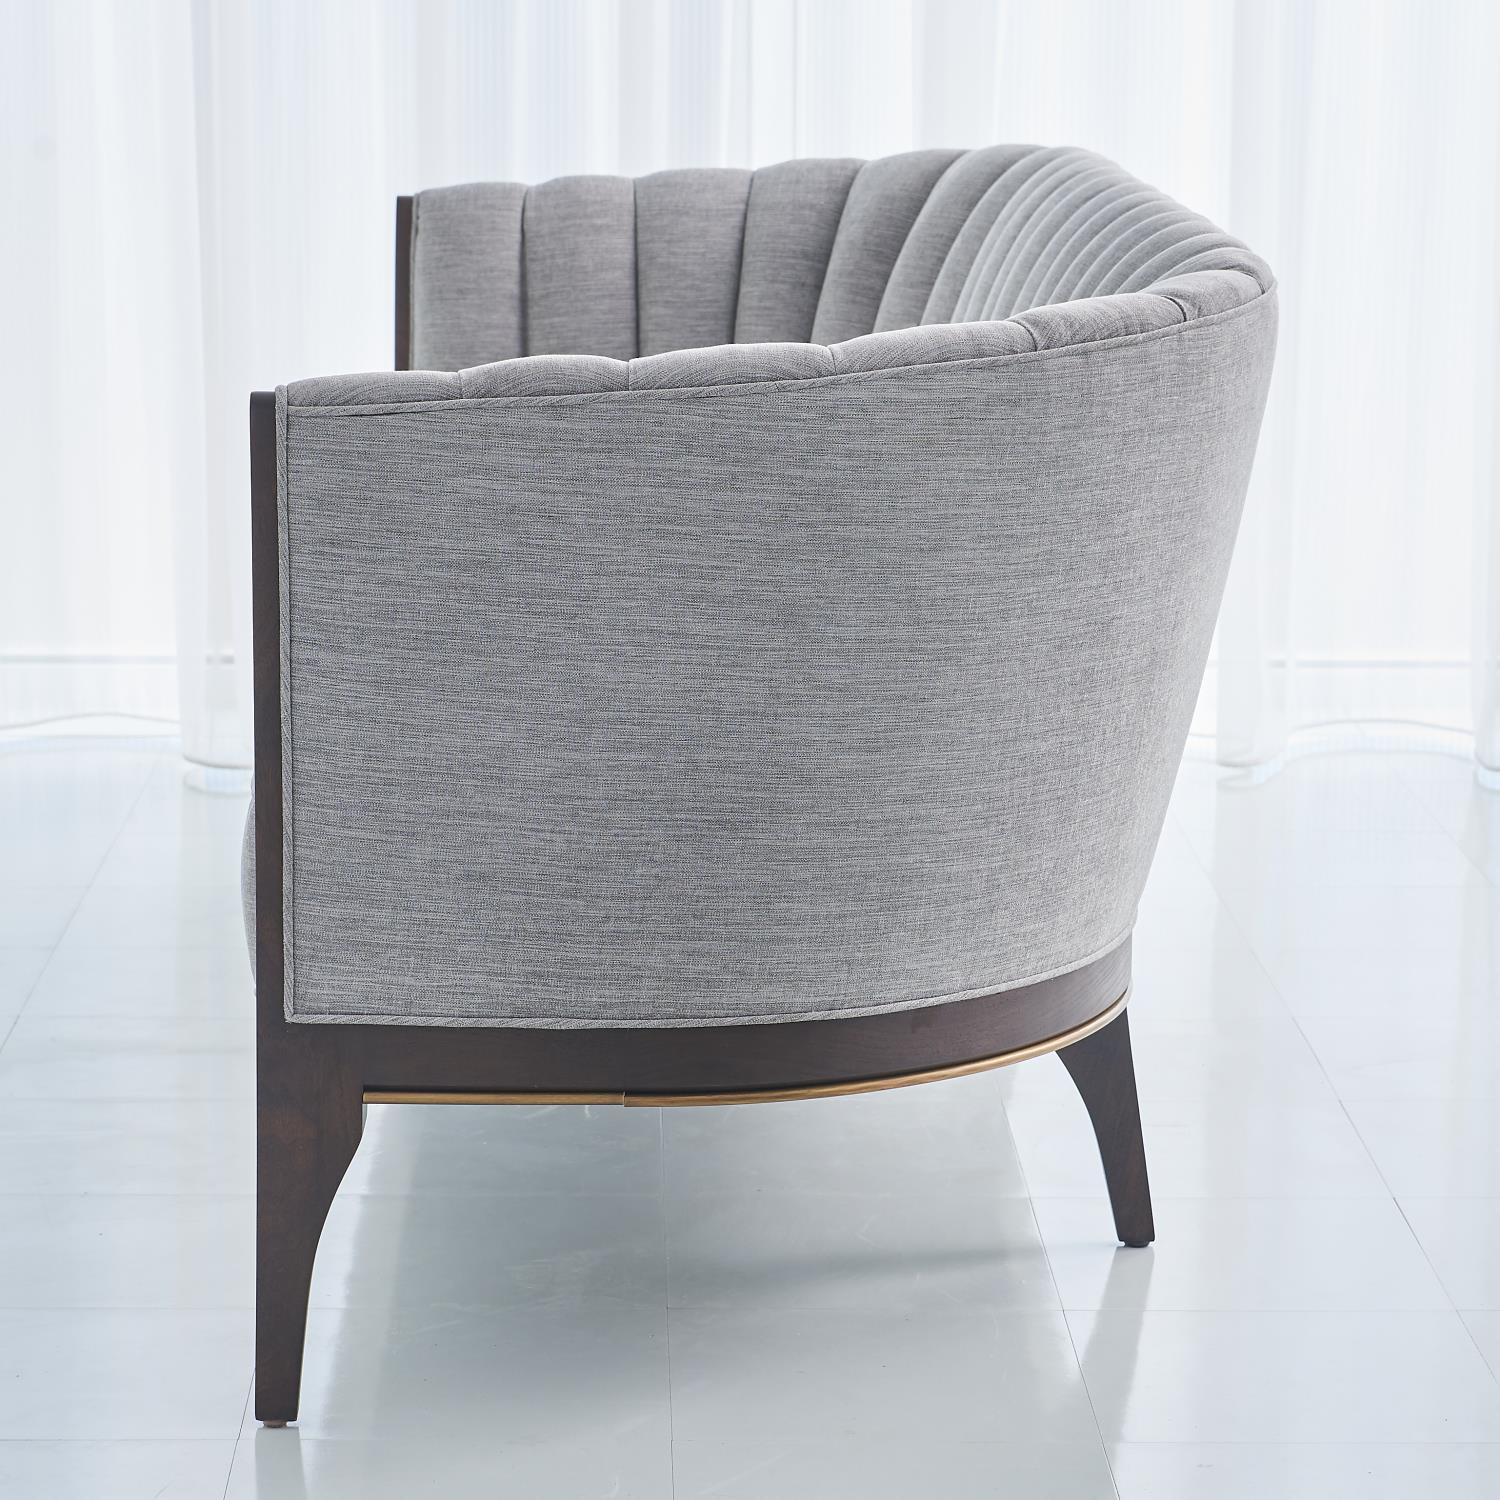 Channel Back Sofa - Silversmith Fabric - Grats Decor Interior Design & Build Inc.